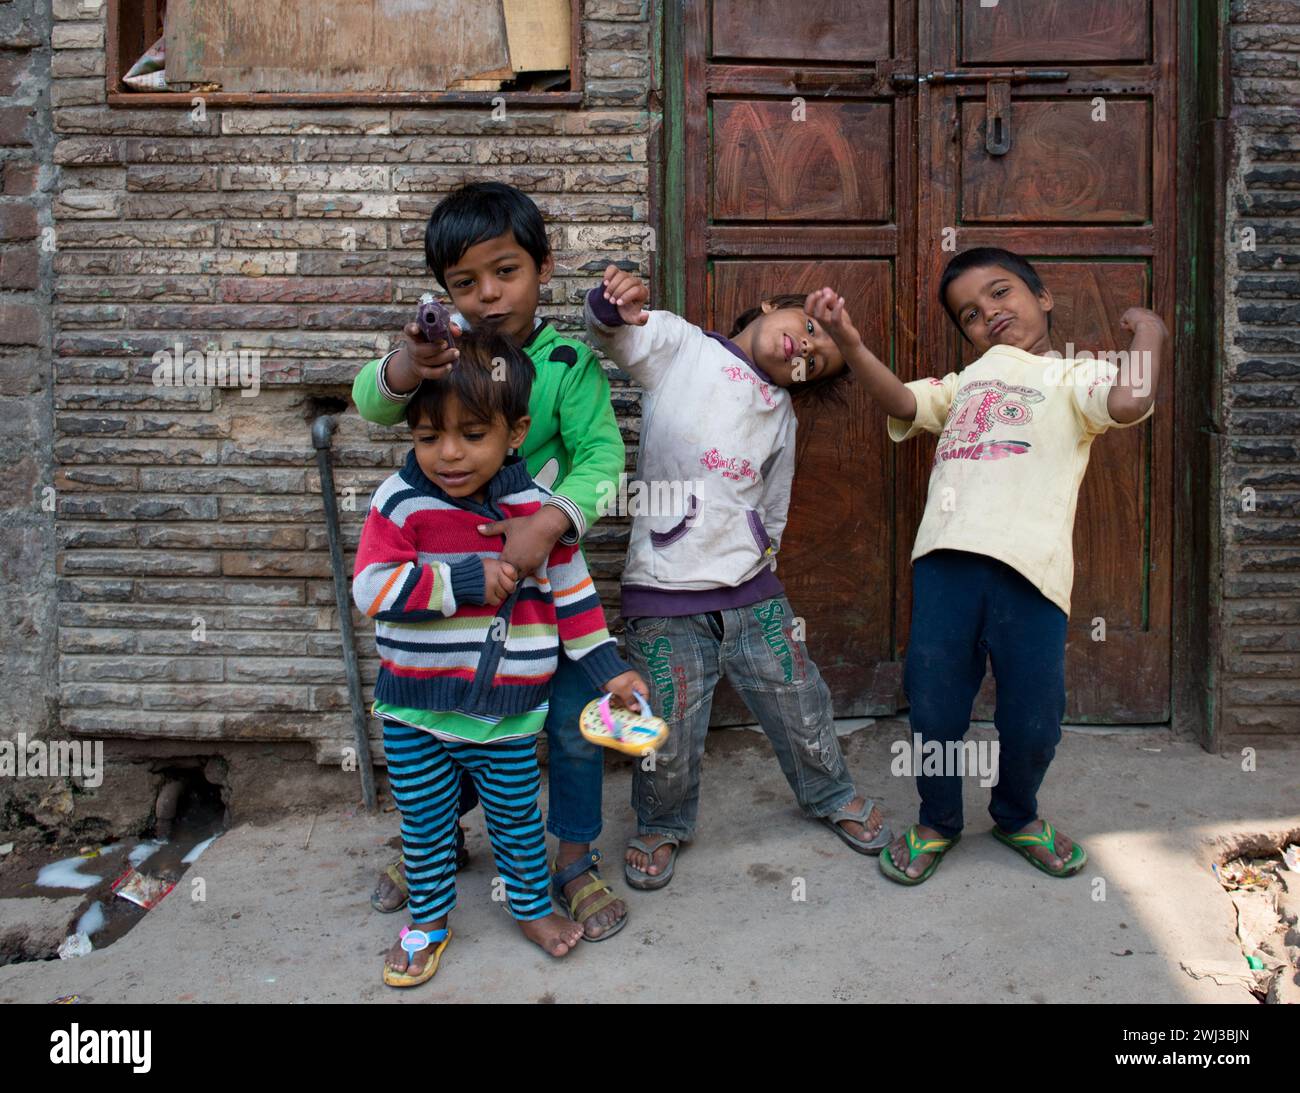 Les enfants indiens asiatiques jouent en portant des vêtements colorés jouent heureux à l'extérieur. Enfants actifs Banque D'Images